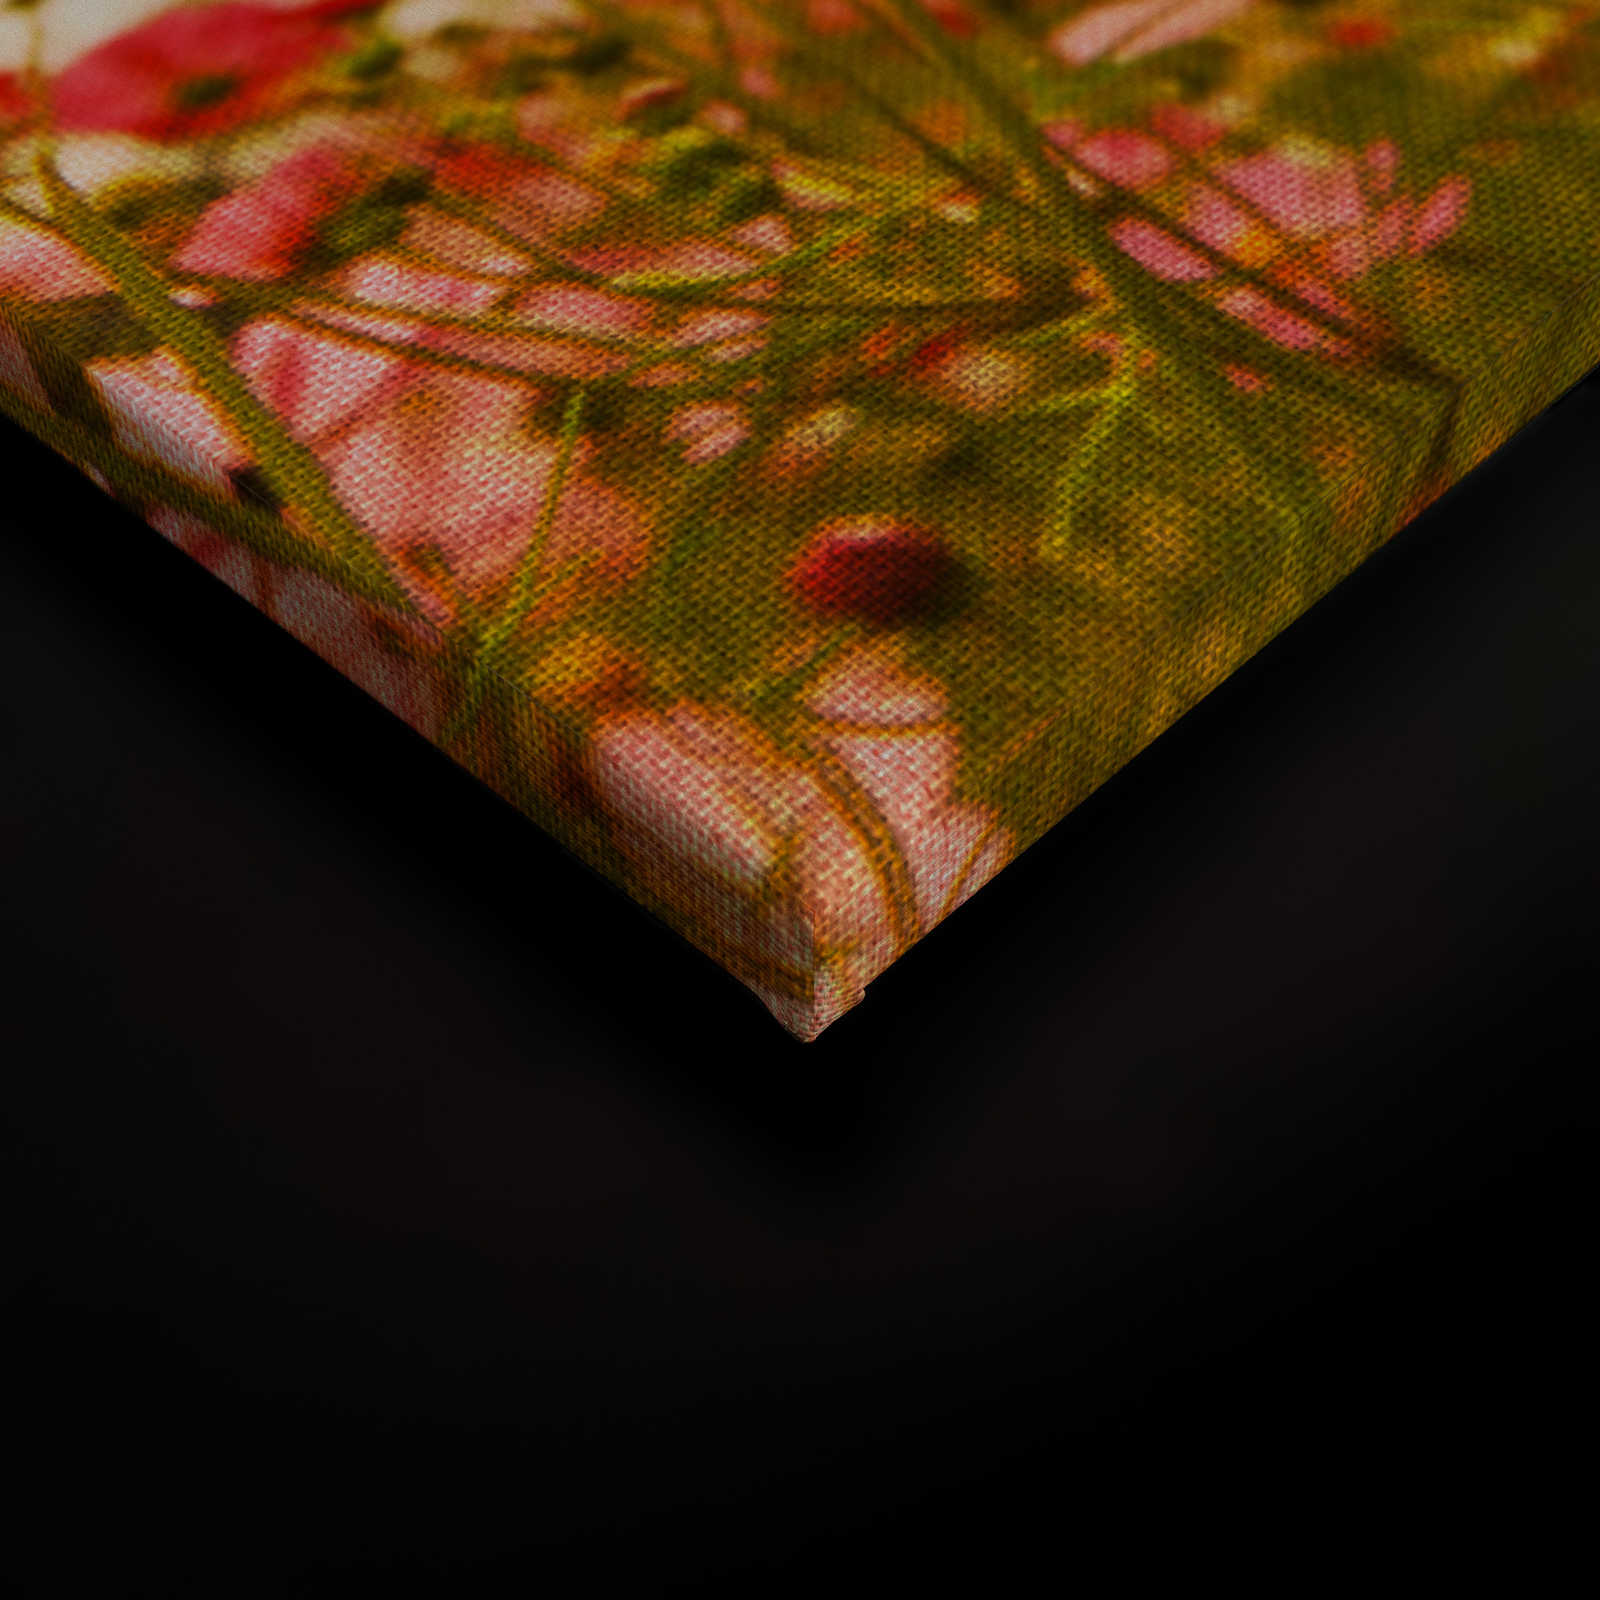             Canvas met bloemenweide in de lente | roze, groen, wit - 0.90 m x 0.60 m
        